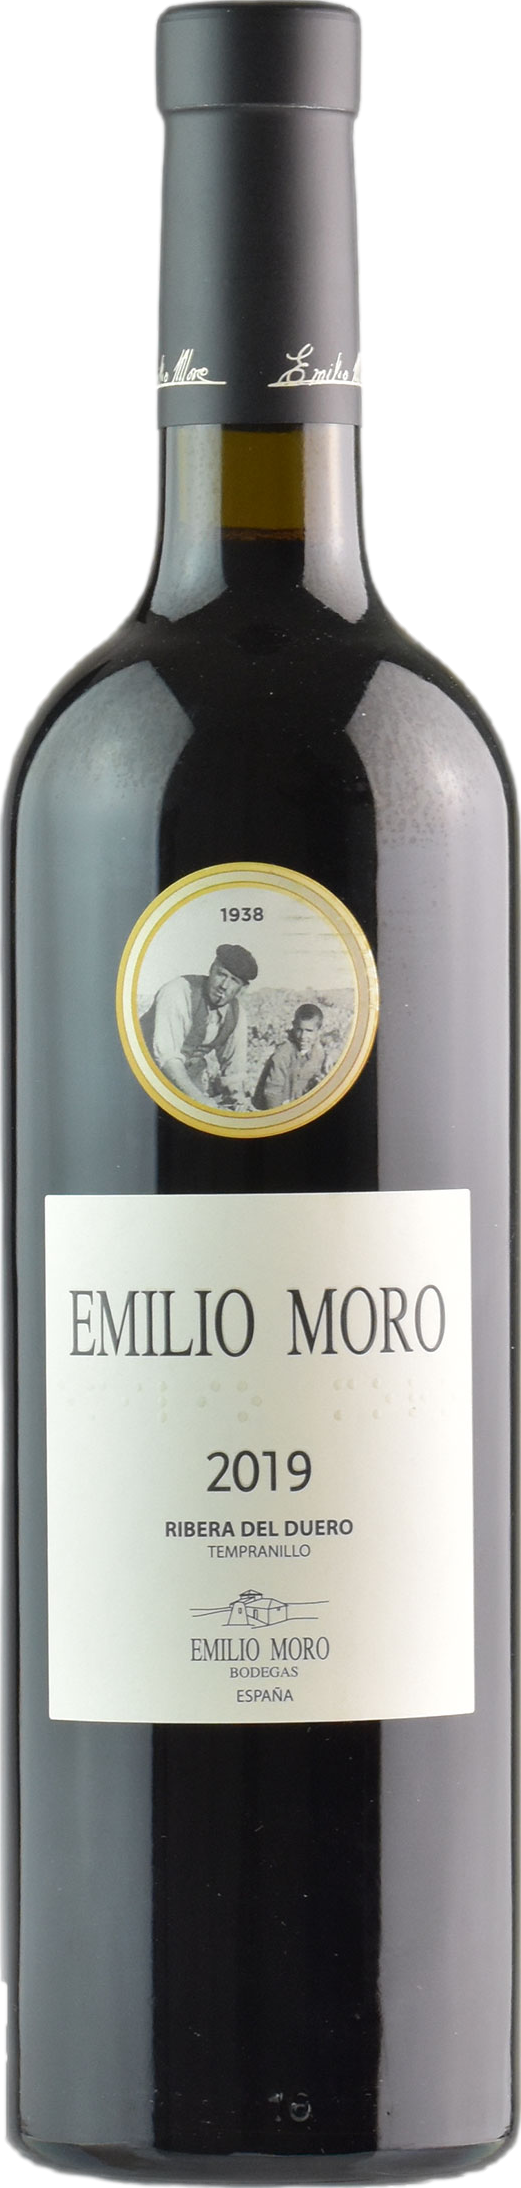 Emilio Moro 2019